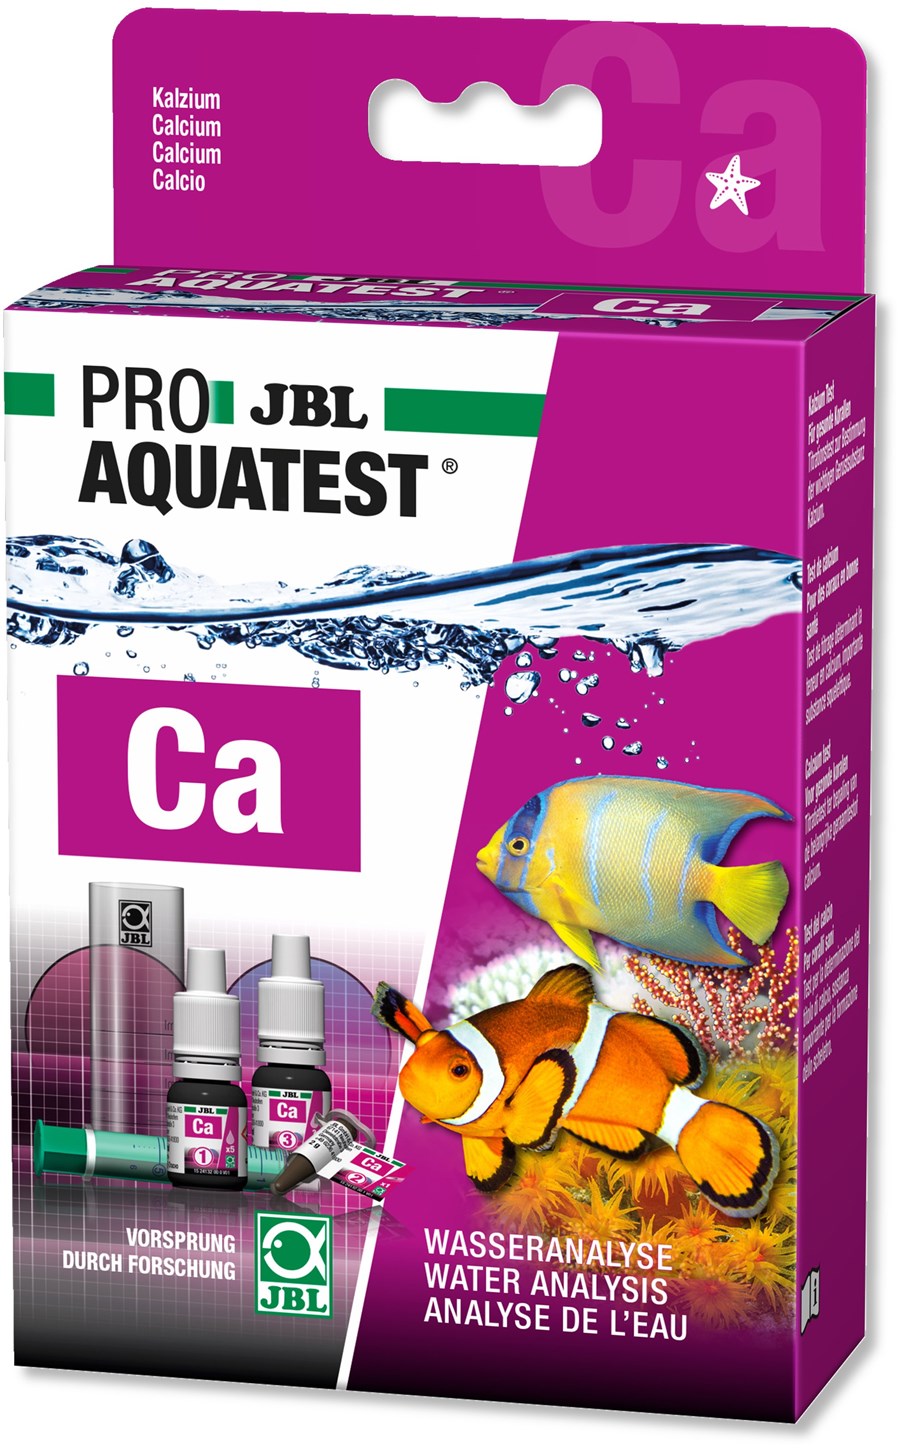 JBL PROAQUATEST Ca Calcium